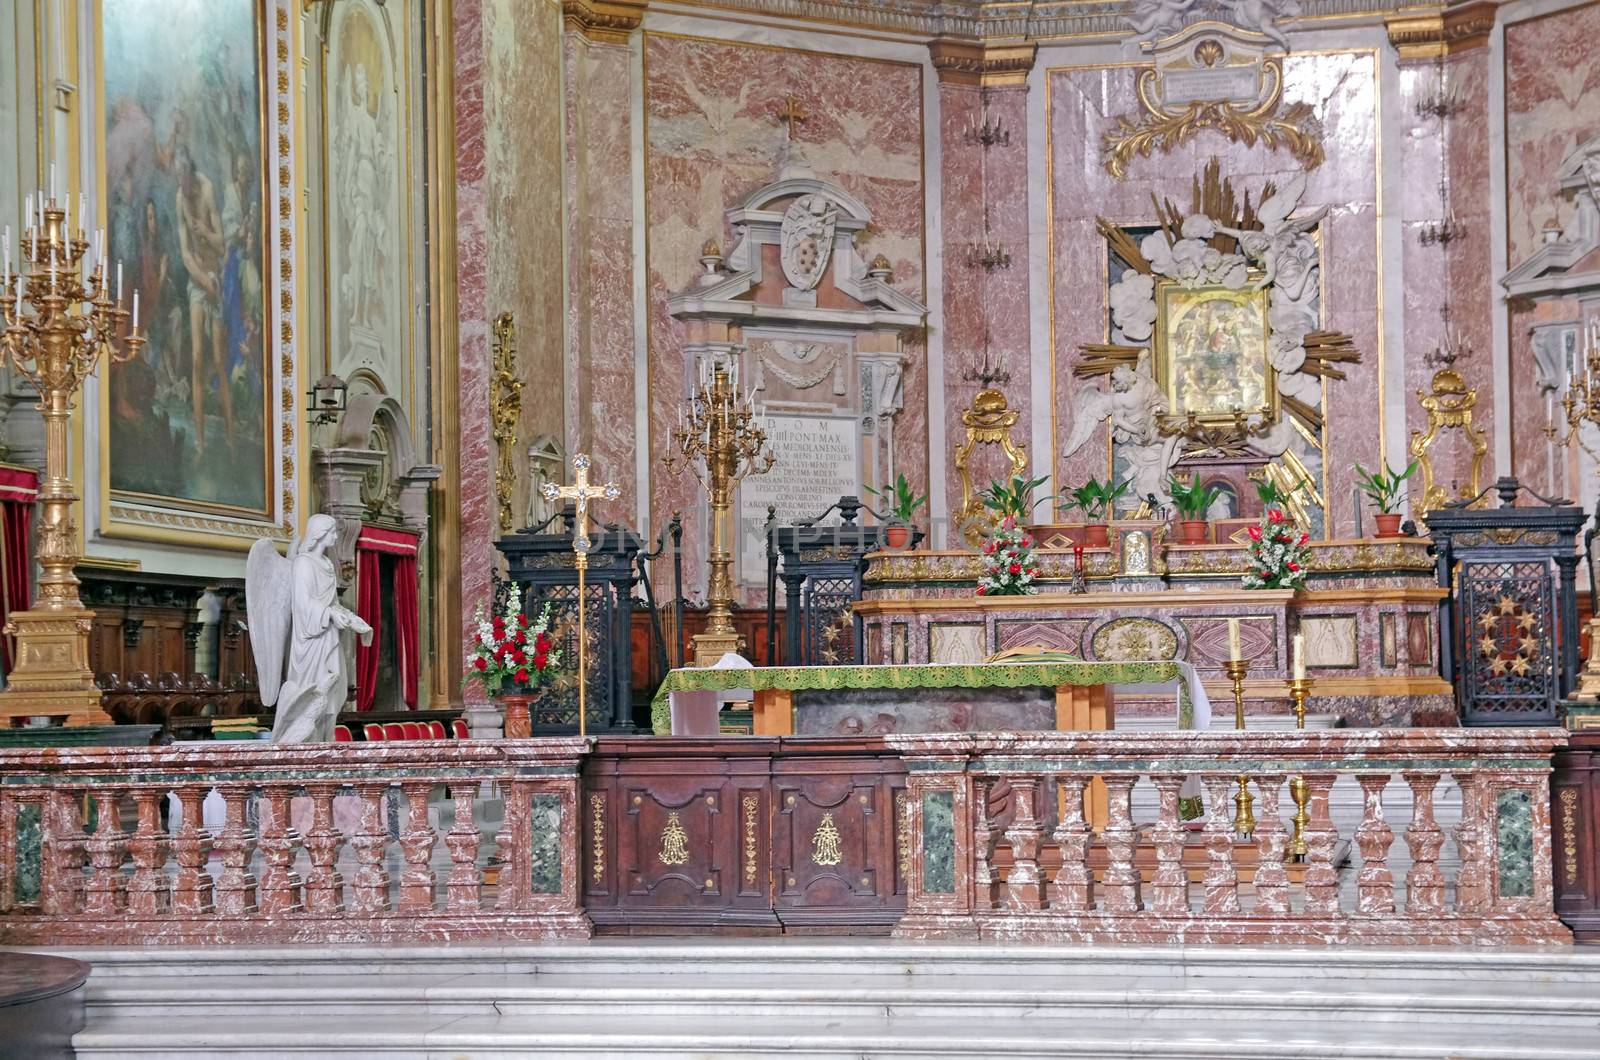 Catholic church in Rome, Santa Maria degli Angeli e dei Martiri